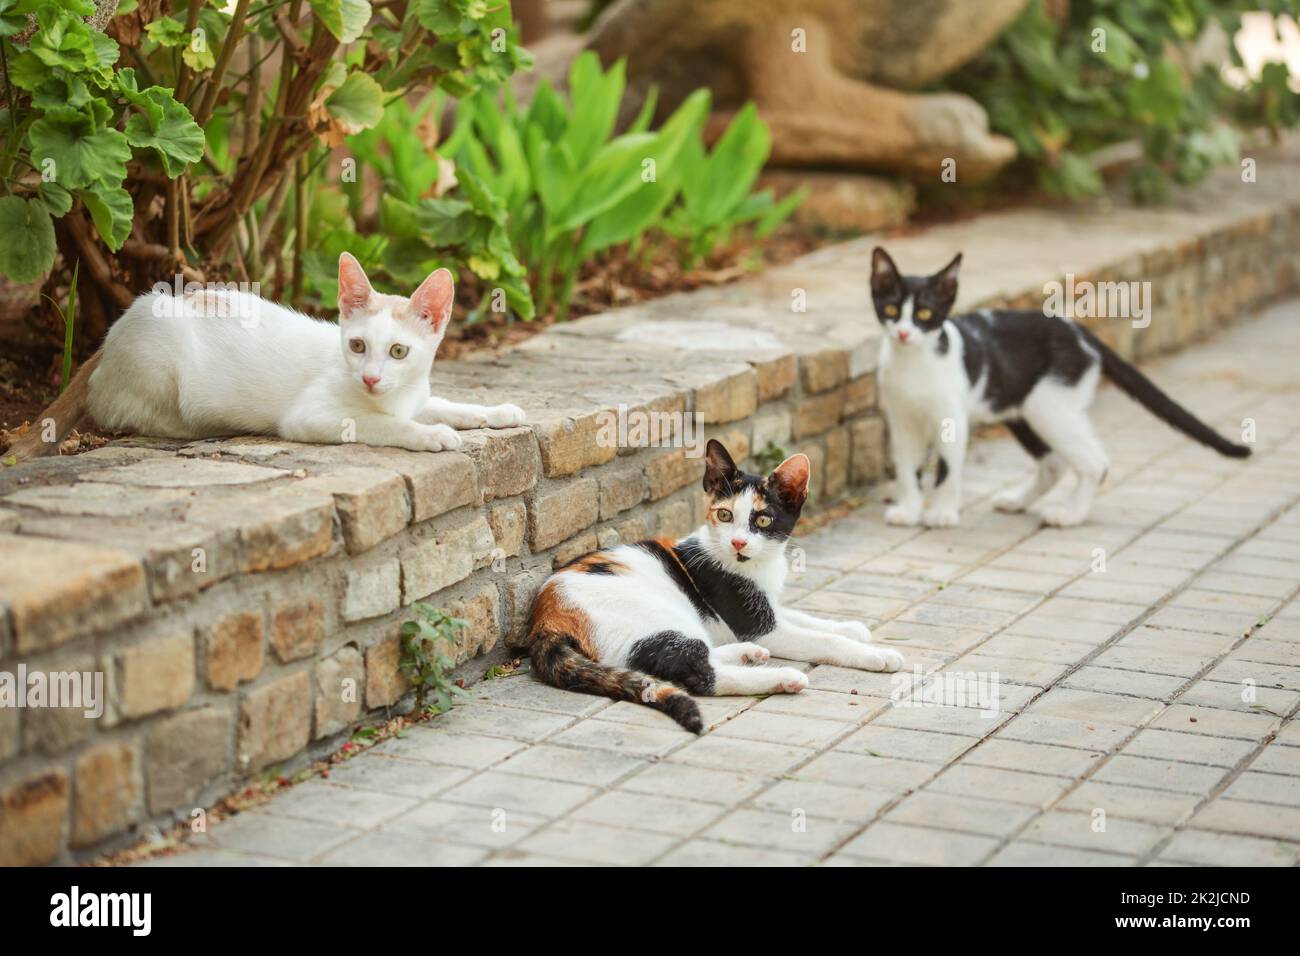 Trois couleurs (blanc noir orange) chat, allongé sur le trottoir en jardin, avec deux autres chats errants autour d'elle. Banque D'Images